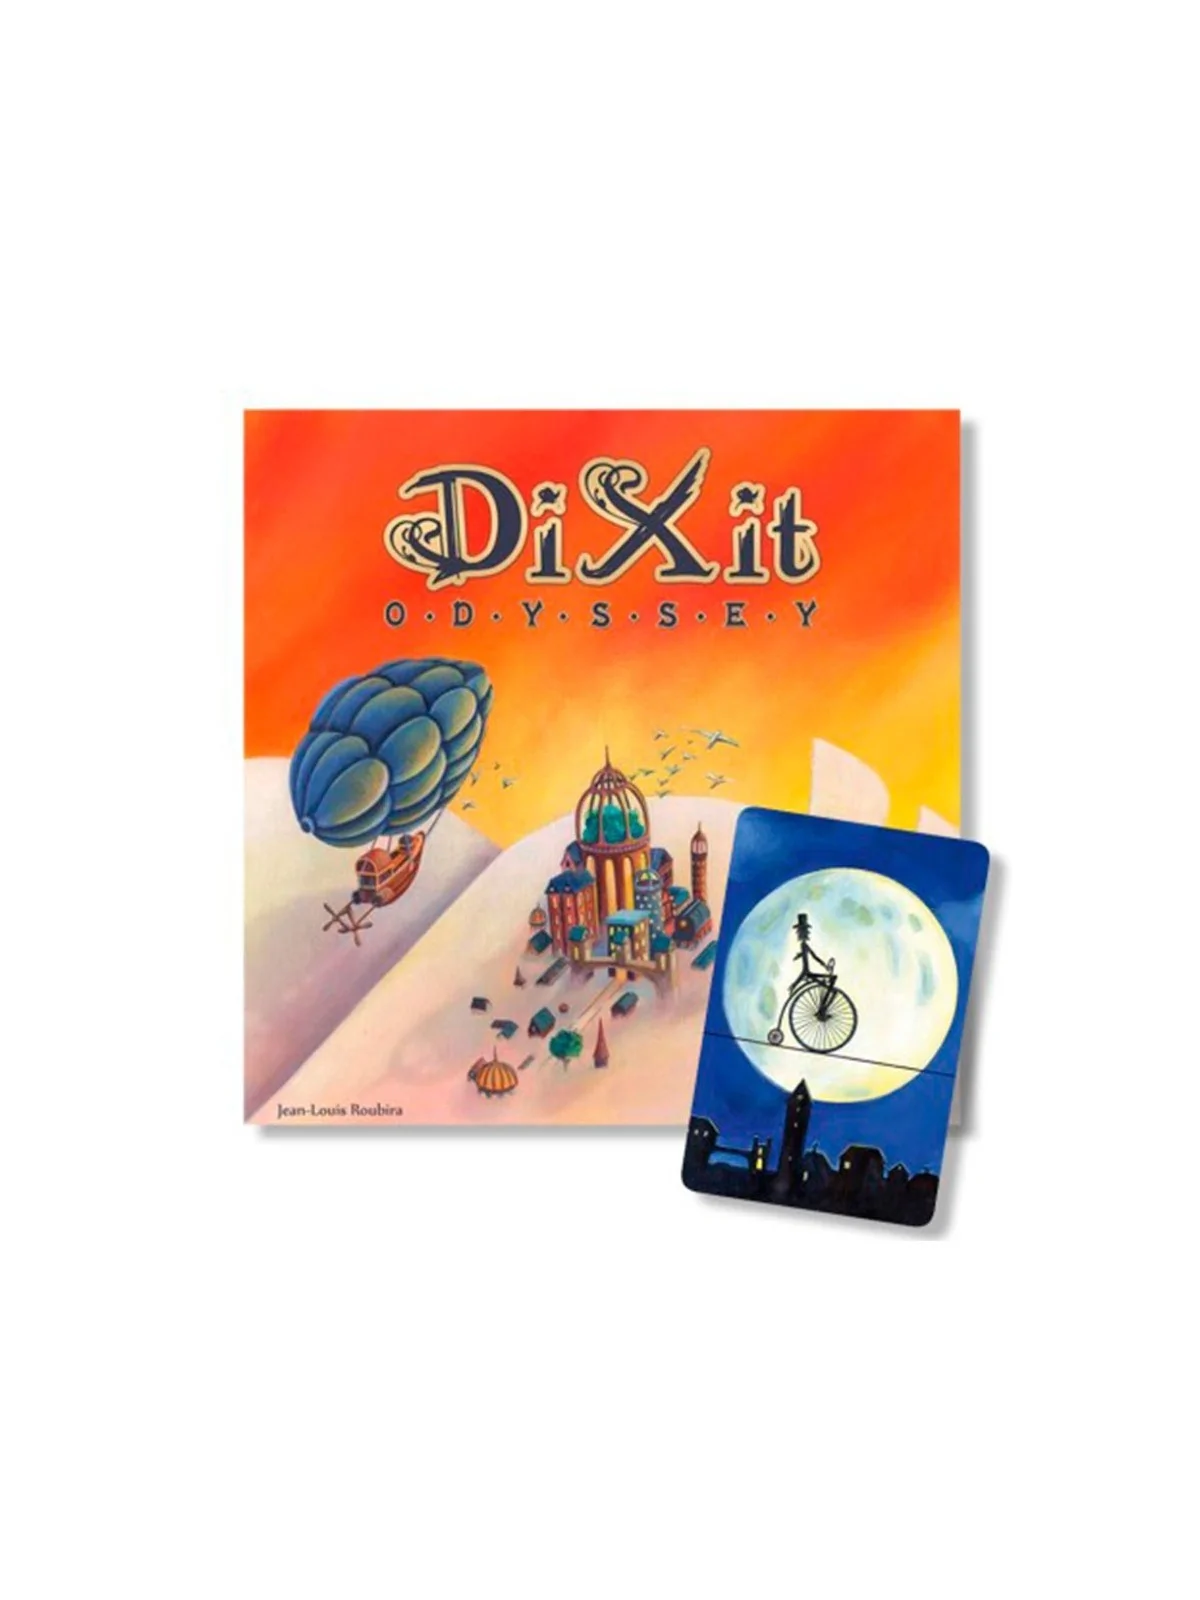 Comprar Dixit Odyssey barato al mejor precio 32,95 € de Libellud